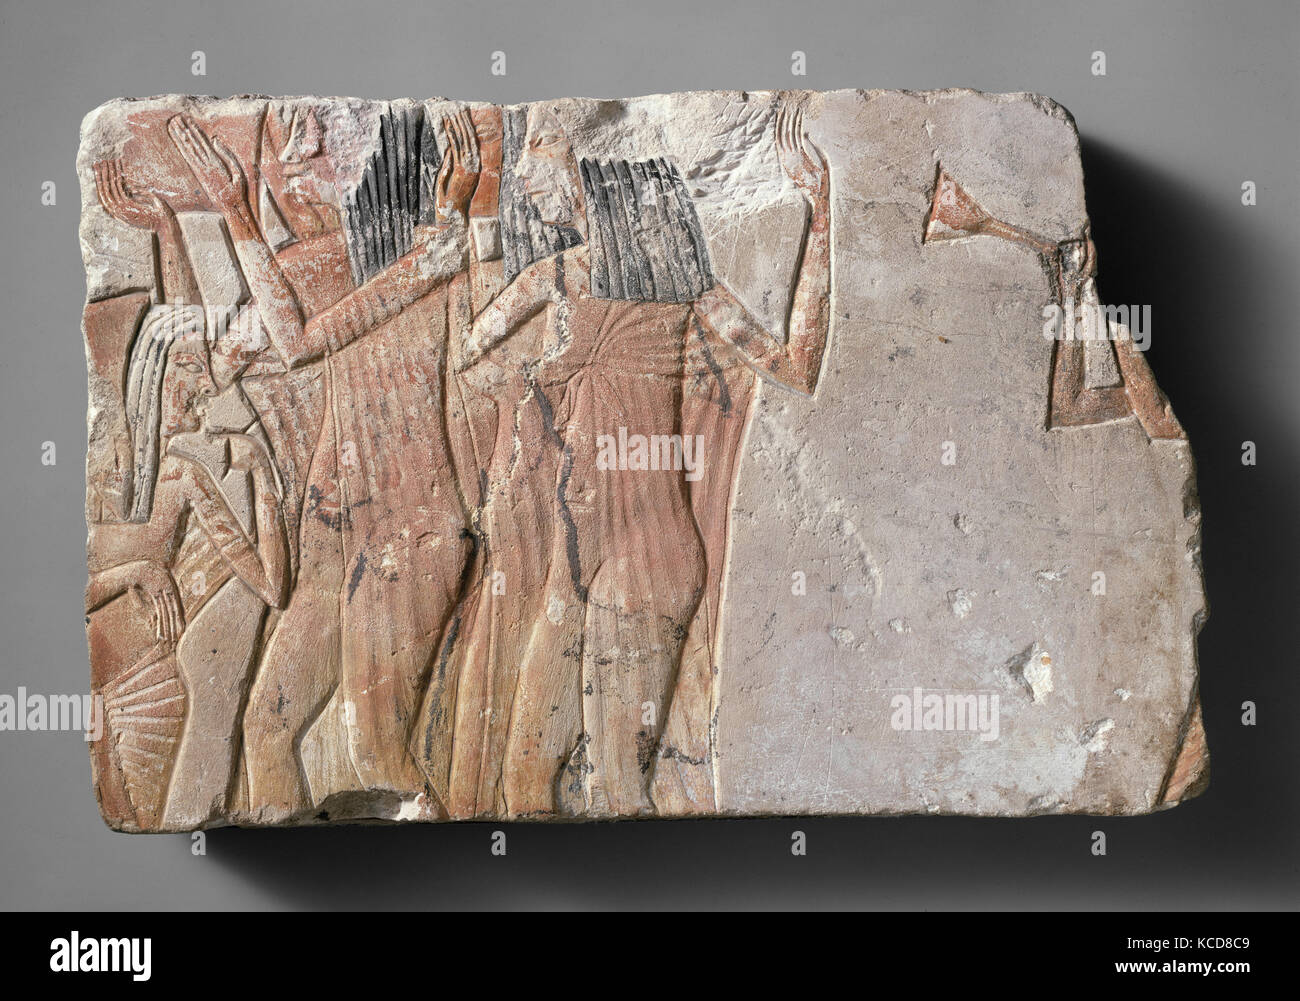 Ballerini con strumenti, Nuovo Regno, periodo di Amarna, Dynasty 18, ca. 1353-1336 A.C. dall'Egitto; probabilmente a partire dal Medio Egitto Foto Stock